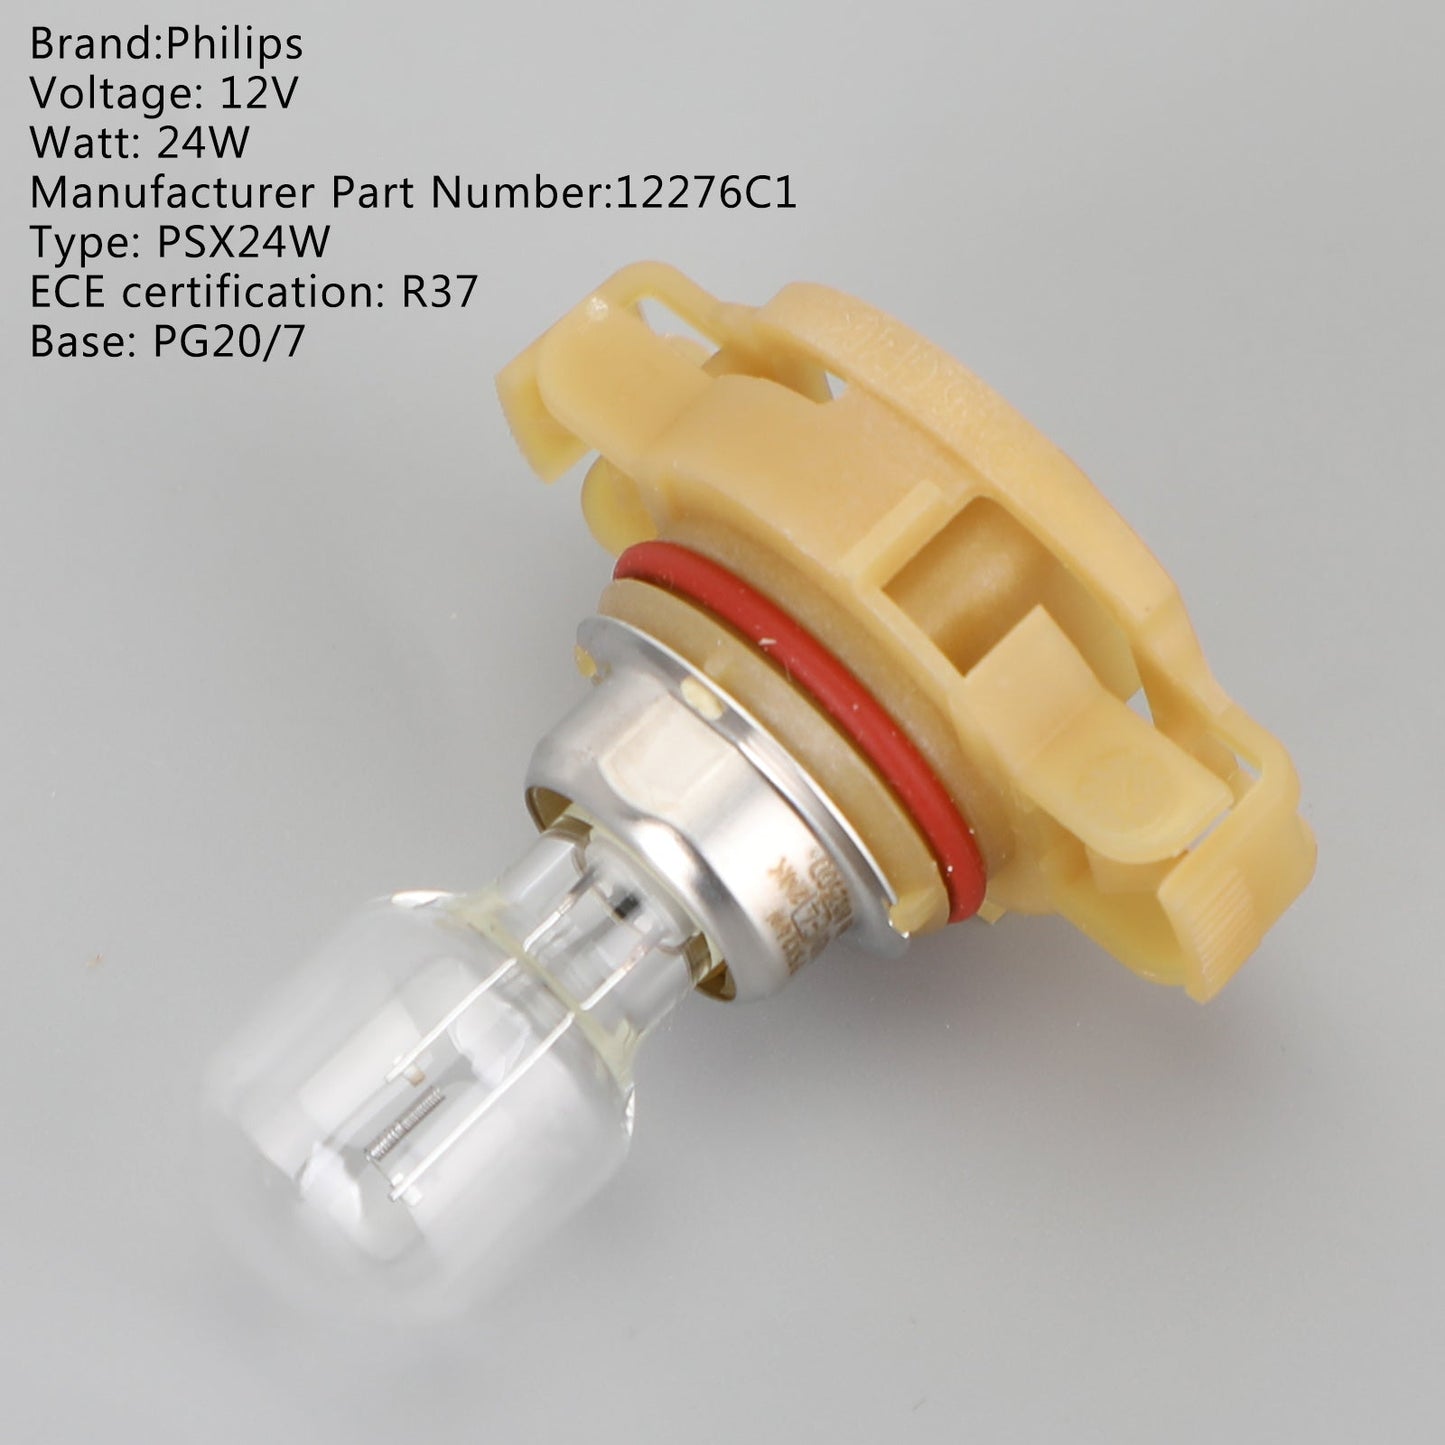 Pour Philips 12276C1 Auto Standard Ampoules Supplémentaires PSX24W 12V24W PG20/7 Générique